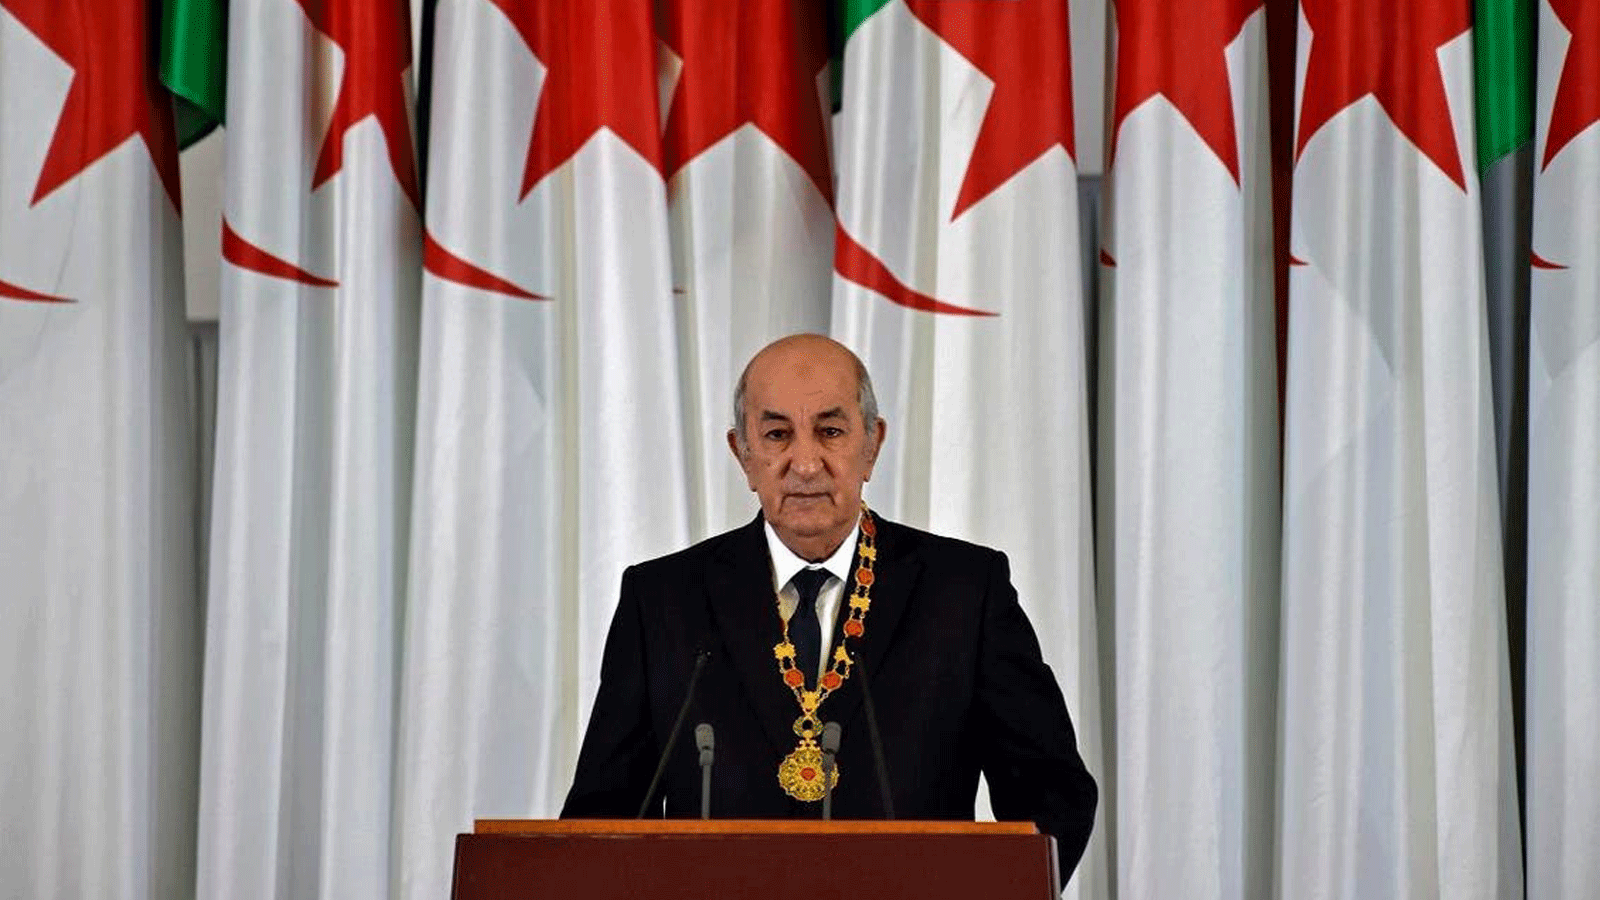 الرئيس الجزائري عبد المجيد تبون يلقي كلمة خلال مراسم أداء اليمين الرسمية في العاصمة الجزائر، 19 كانون الأول/ديسمبر 2019